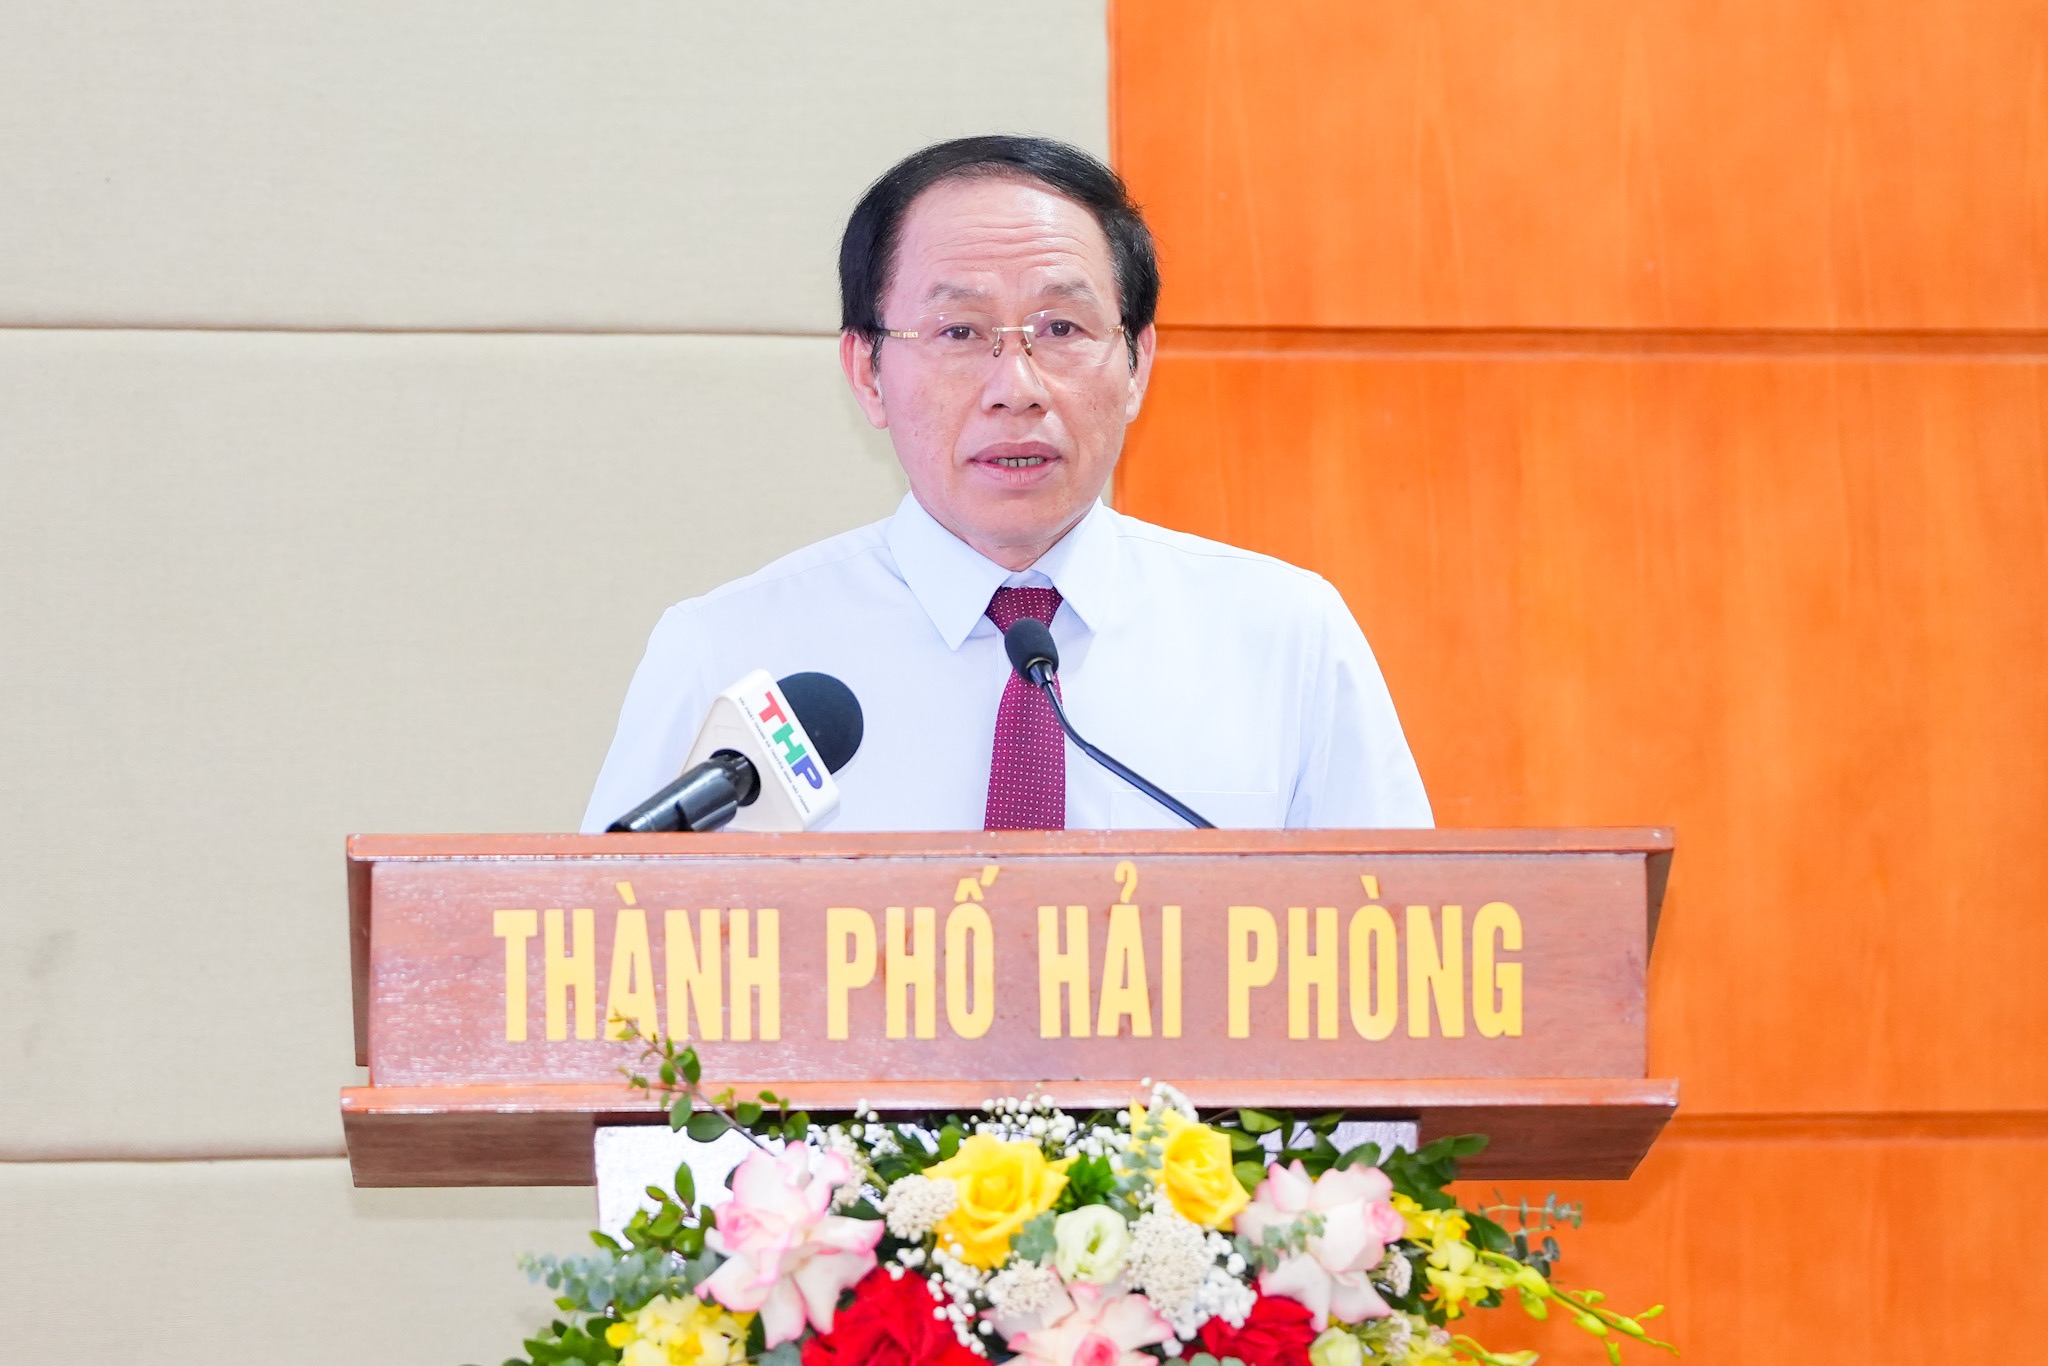 Ông Lê Tiến Châu, Bí thư Thành ủy Hải Phòng phát biểu tại Hội nghị